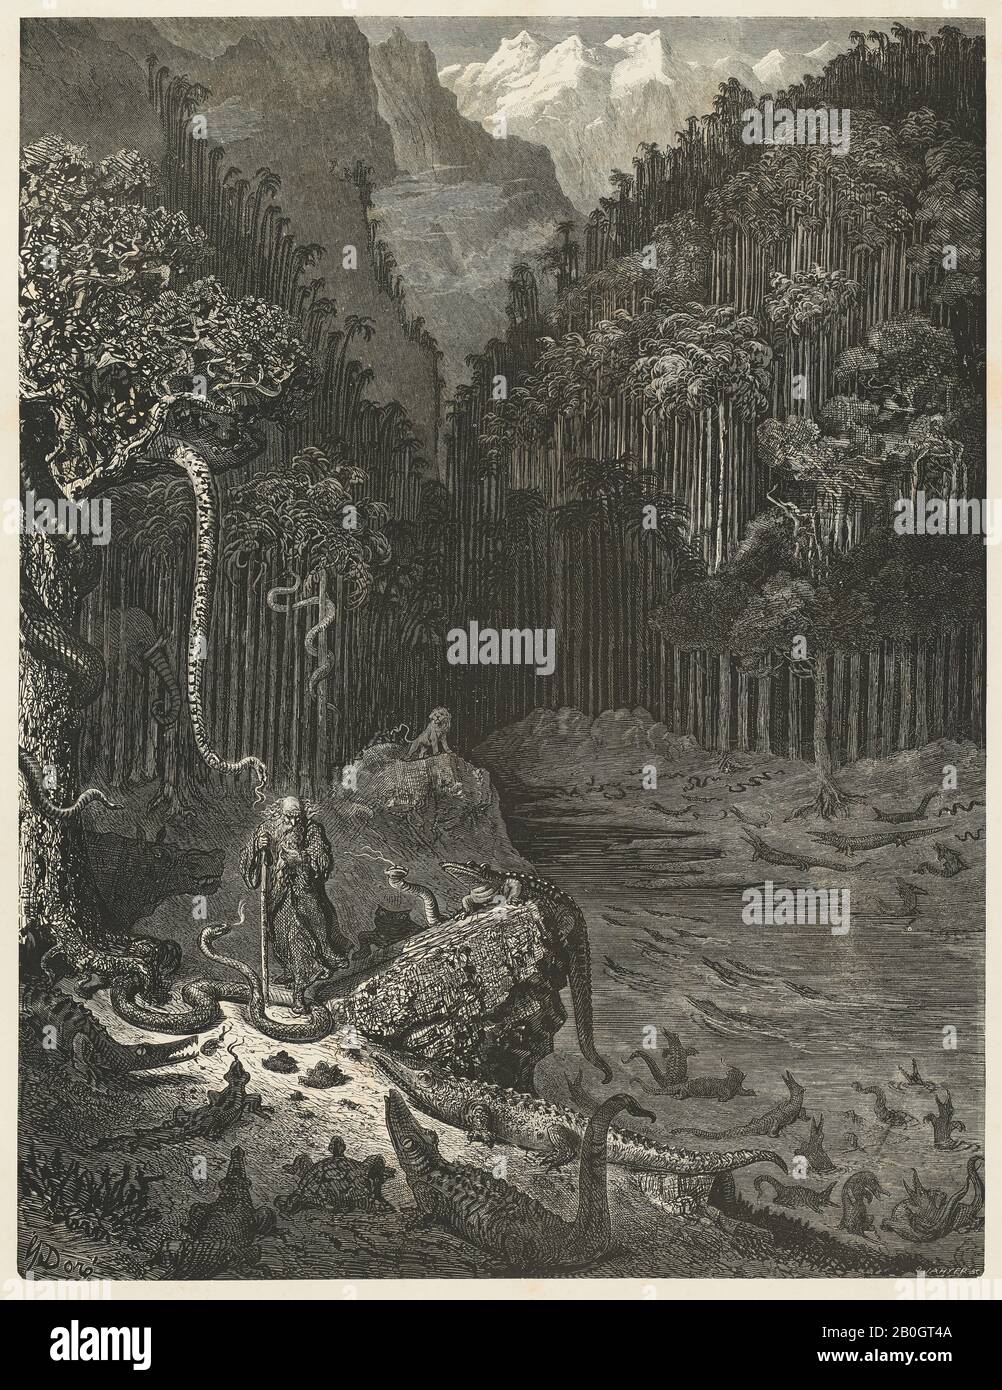 Gustave Doré, francés, 1832–1883, la Leyenda del Judío que se mueve, 11: Árboles entrelazados con serpientes..., 1856, grabado de madera sobre papel de la paloma, imagen: 15 7/8 x 12 1/8 pulgadas (40.3 x 30.8 cm Foto de stock